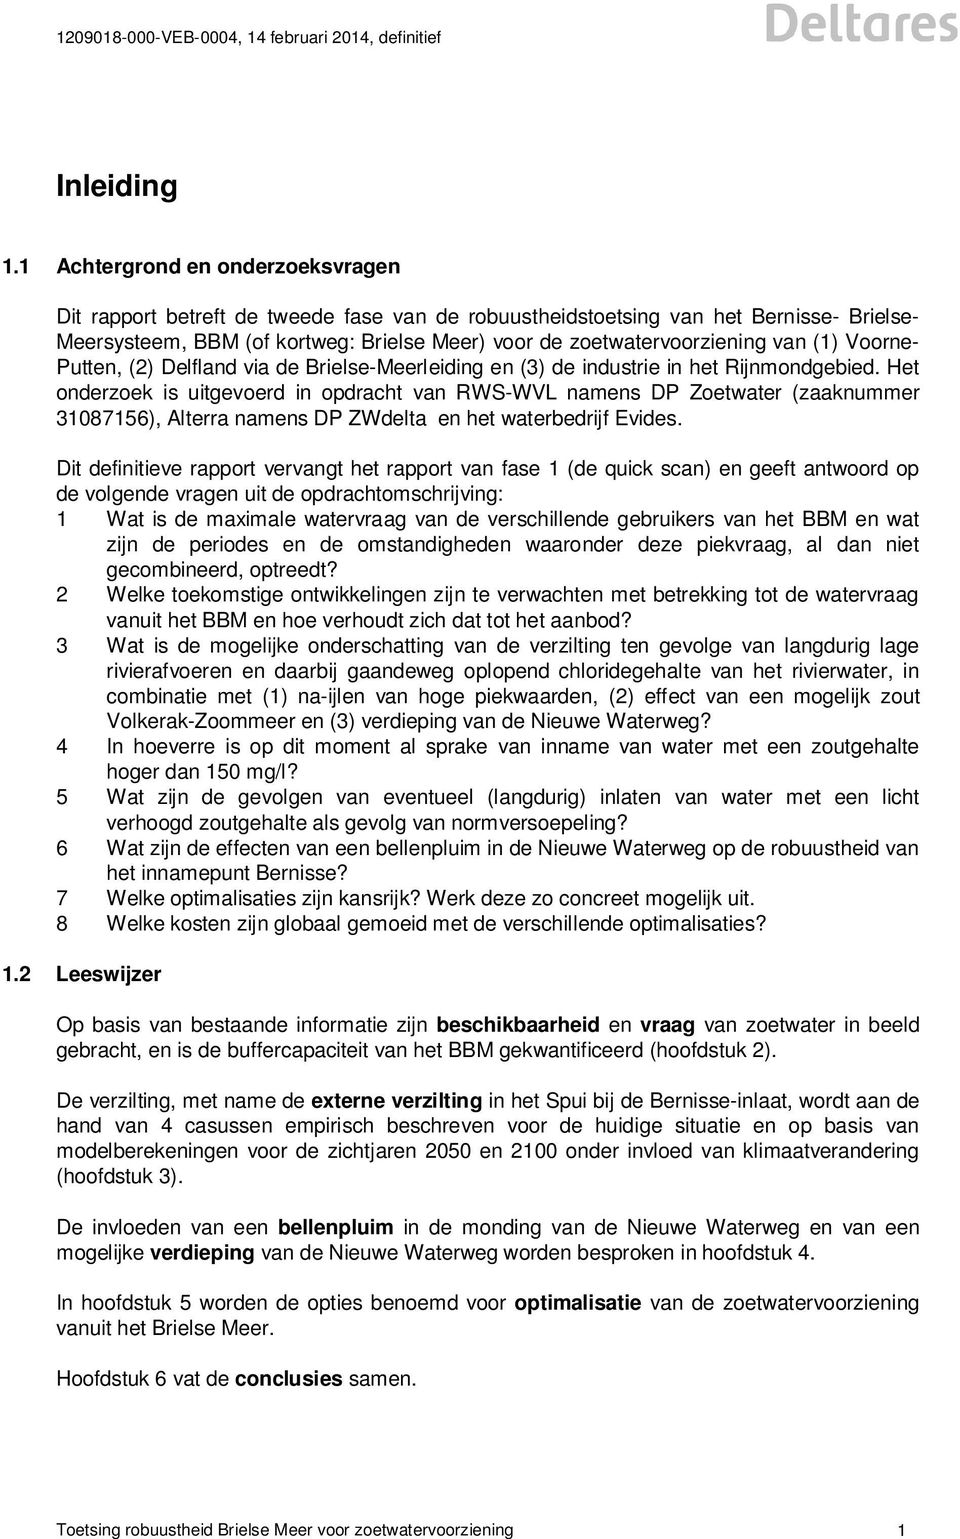 van (1) Voorne- Putten, (2) Delfland via de Brielse-Meerleiding en (3) de industrie in het Rijnmondgebied.